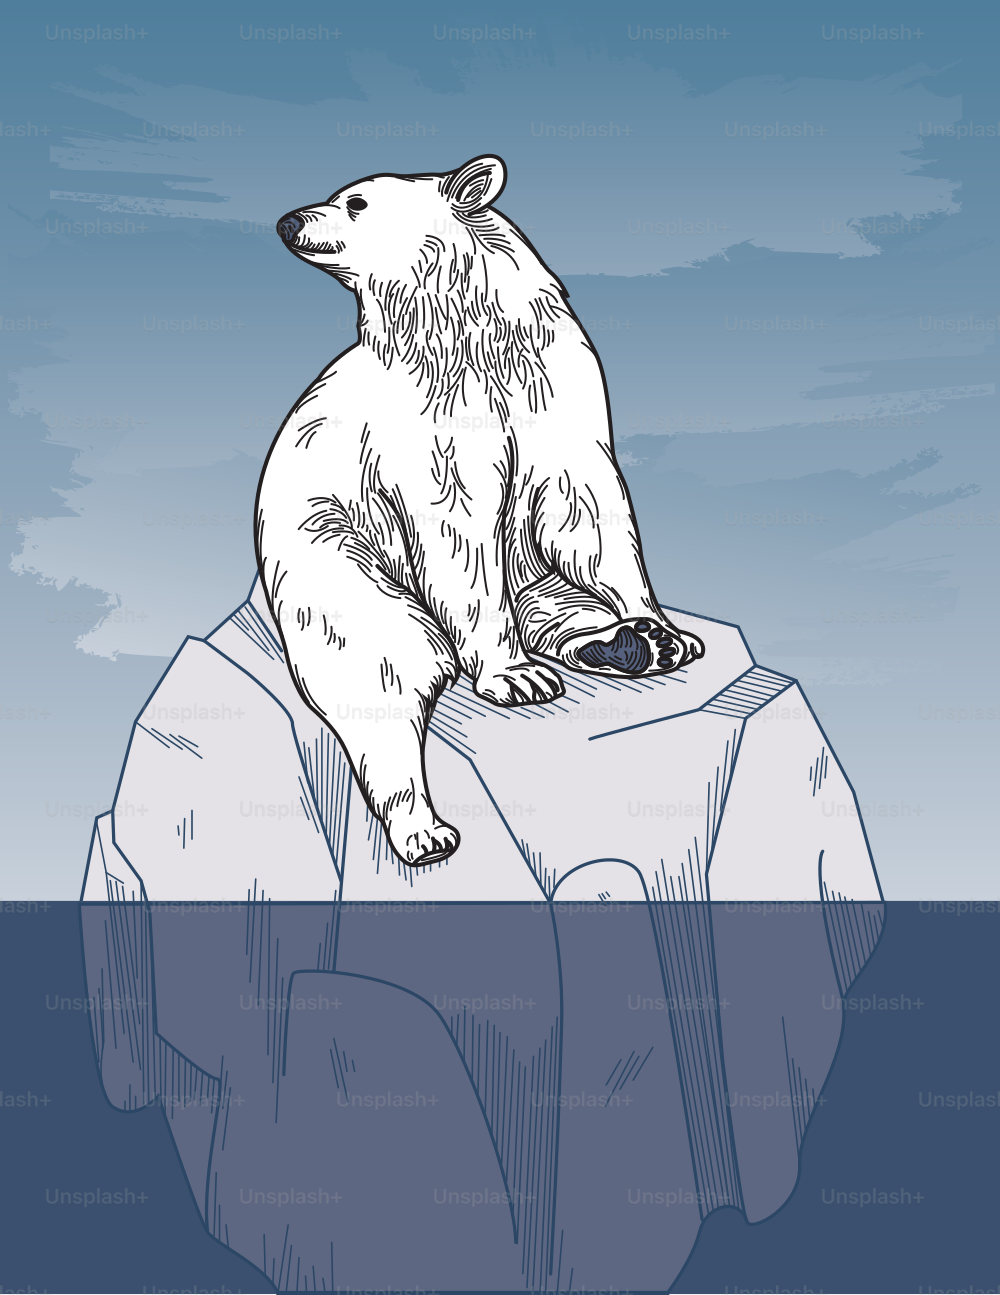 Solo un oso polar solitario, aparcado en un iceberg. Sería una buena imagen metafórica para los conceptos de calentamiento global.